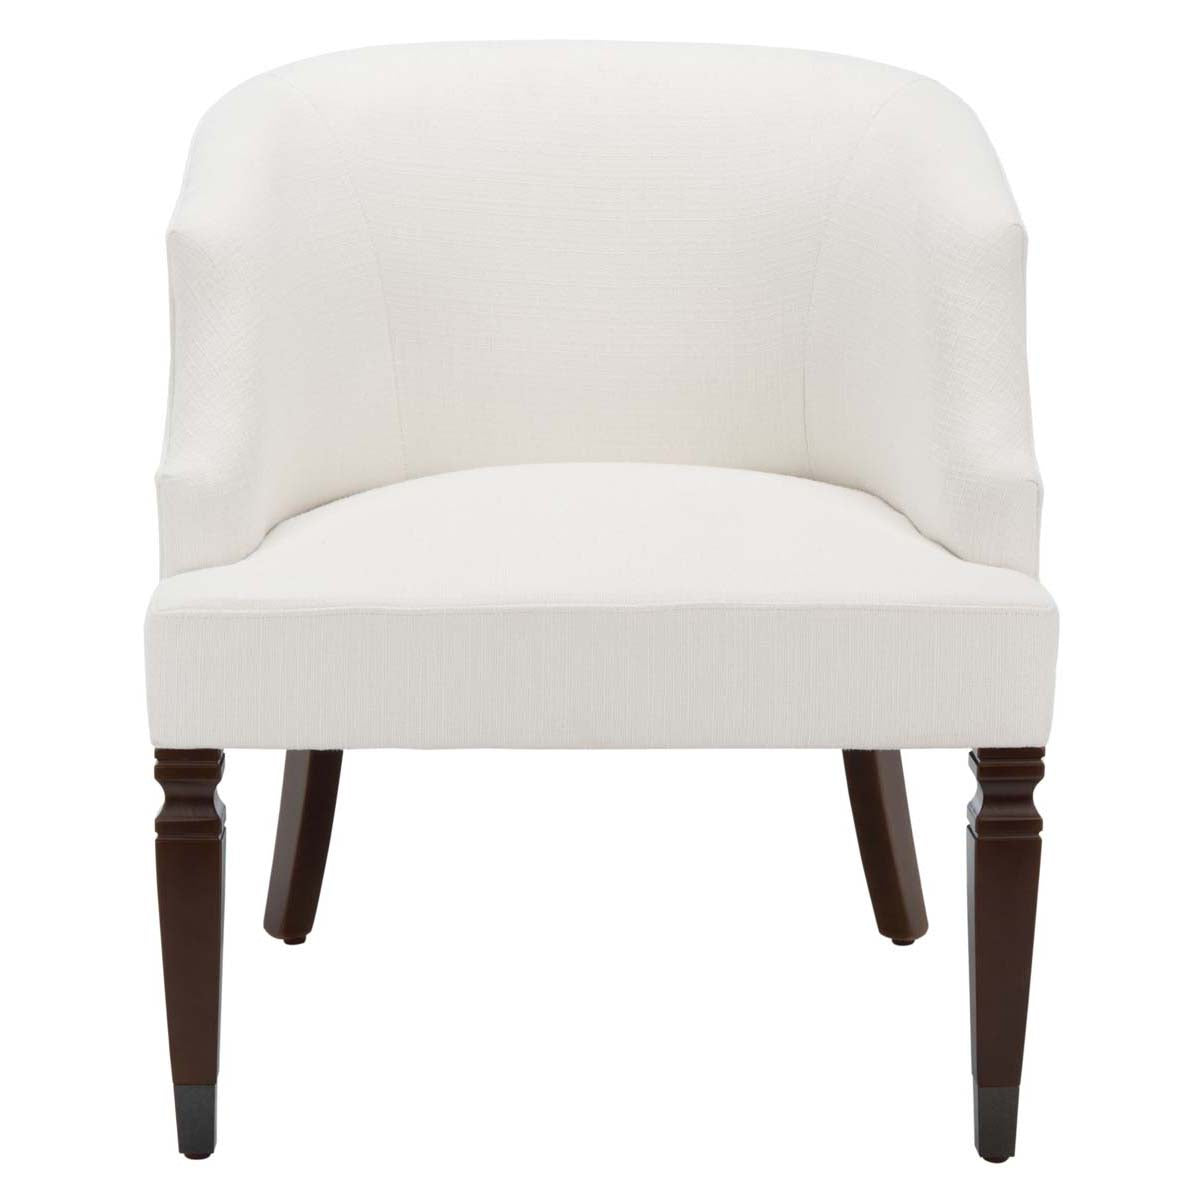 Safavieh Ibuki Accent Chair , ACH4006 - White